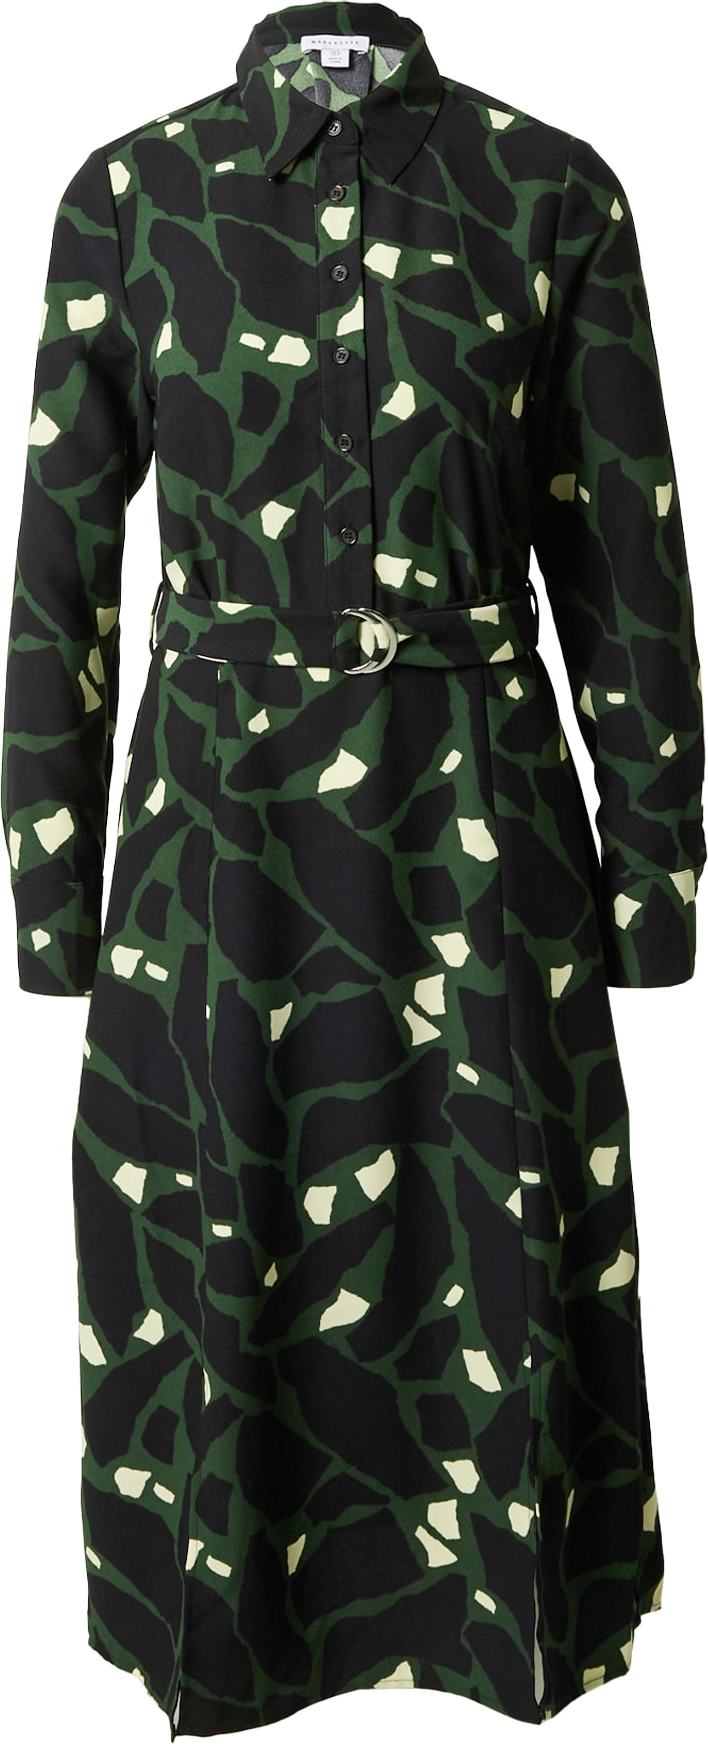 Košilové šaty Warehouse slonová kost / tmavě zelená / černá